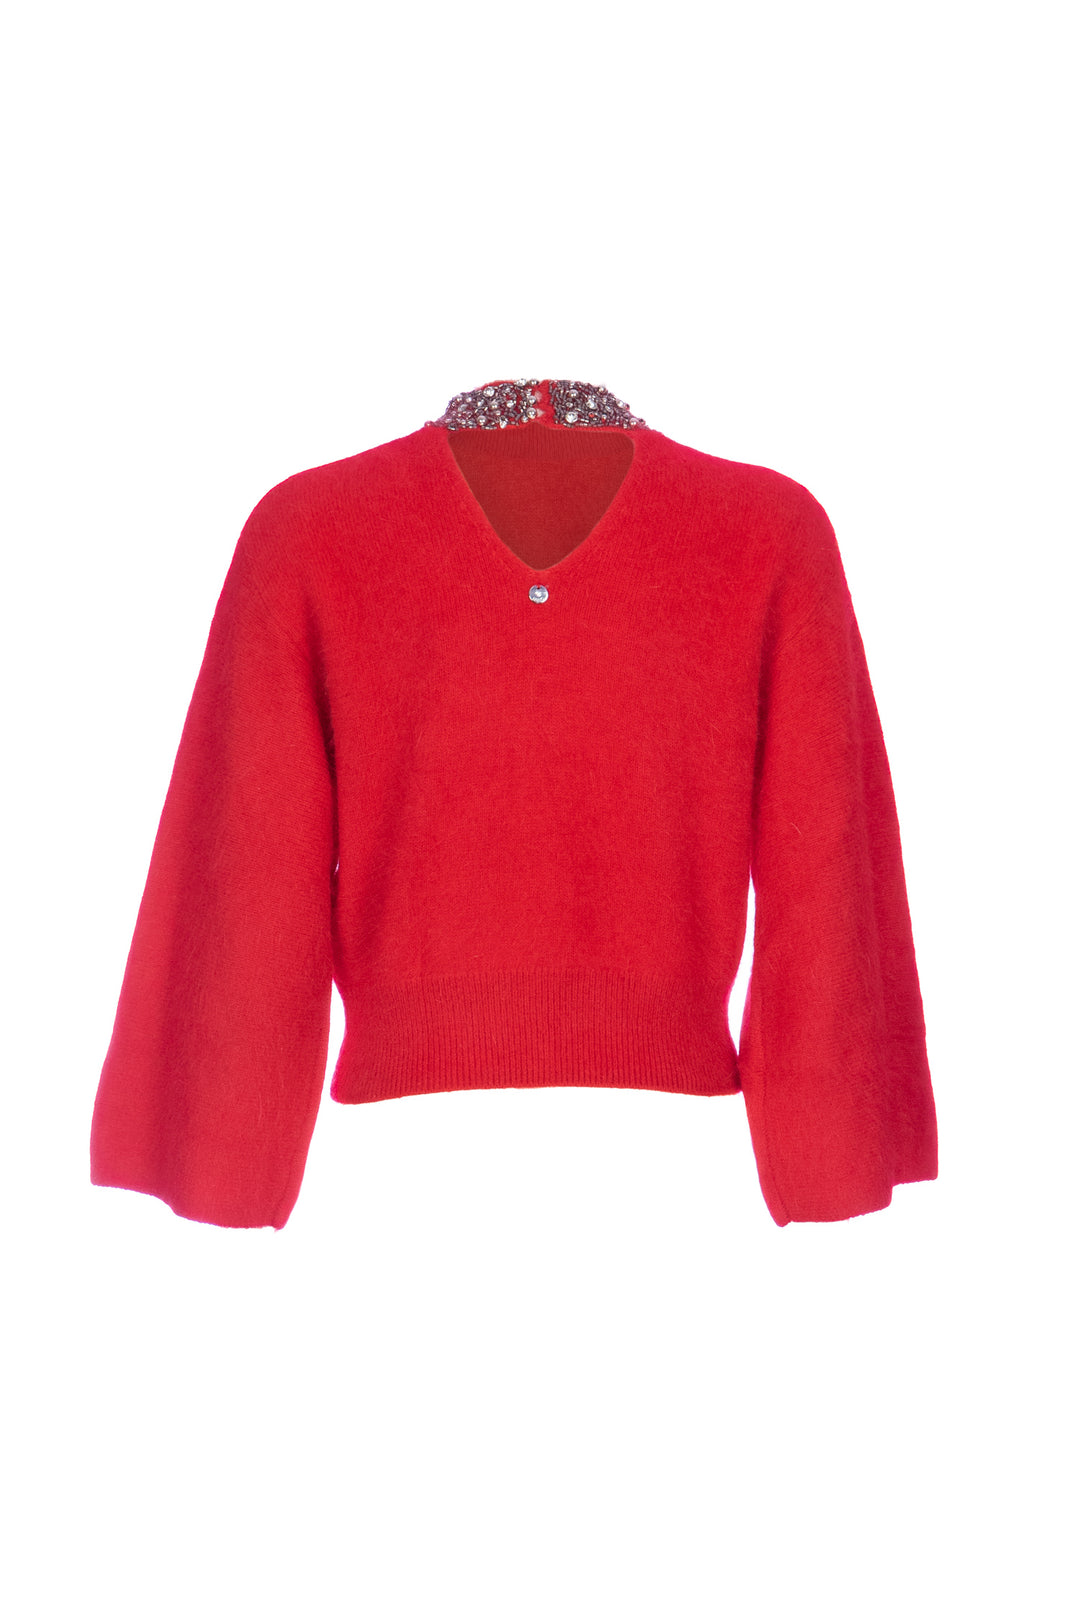 LIU JO Pullover rosso in angora con ricamo gioiello - Mancinelli 1954